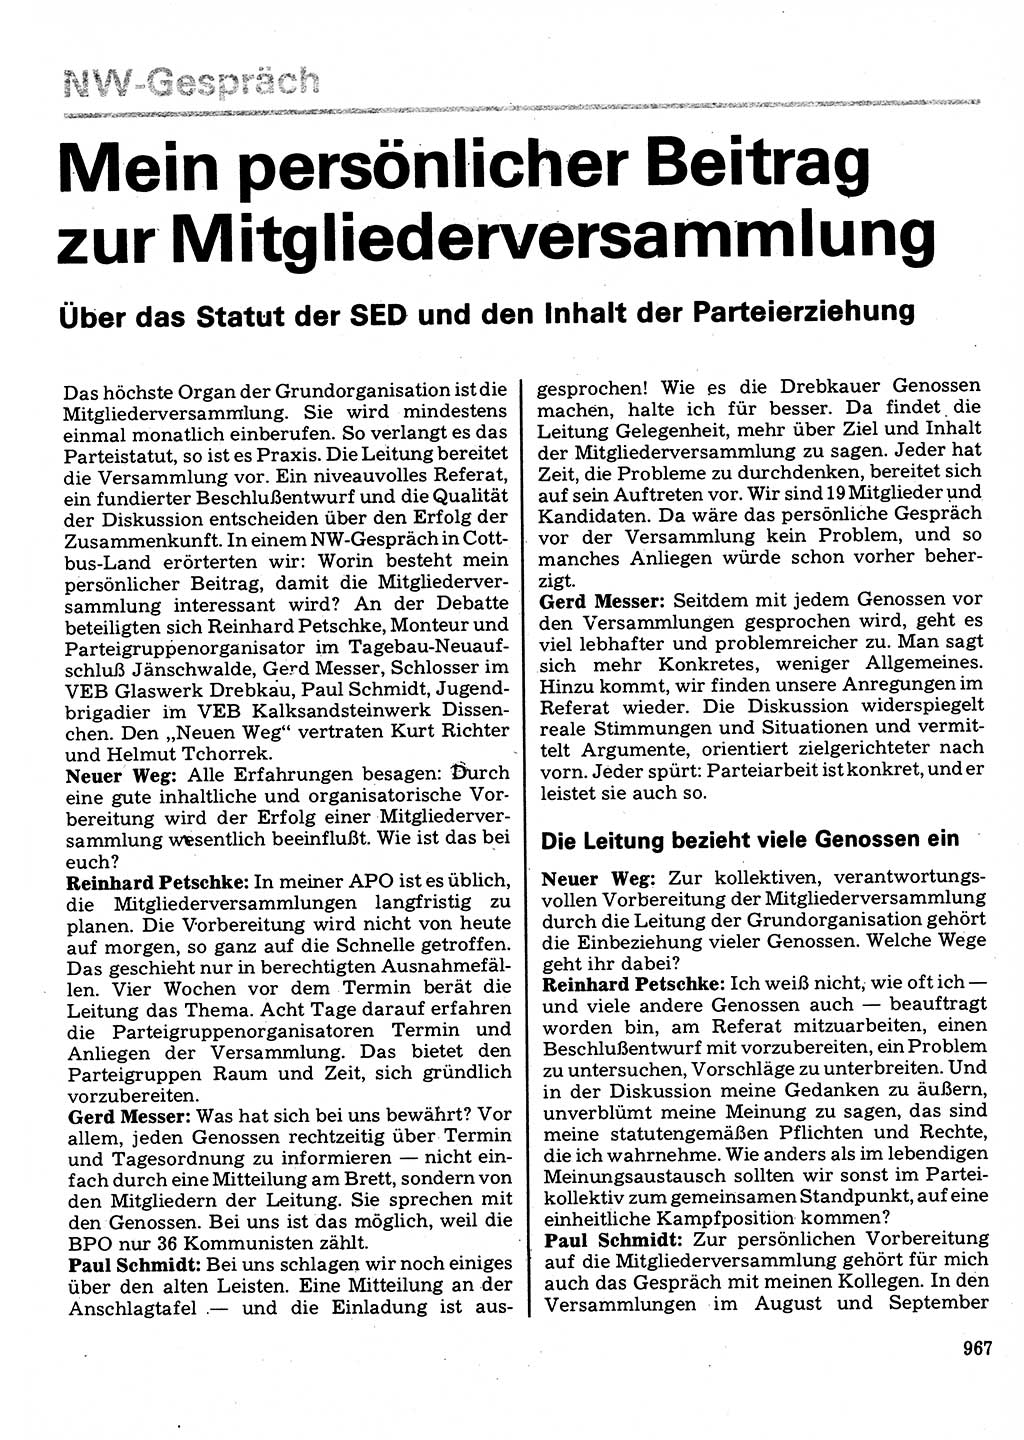 Neuer Weg (NW), Organ des Zentralkomitees (ZK) der SED (Sozialistische Einheitspartei Deutschlands) für Fragen des Parteilebens, 32. Jahrgang [Deutsche Demokratische Republik (DDR)] 1977, Seite 967 (NW ZK SED DDR 1977, S. 967)